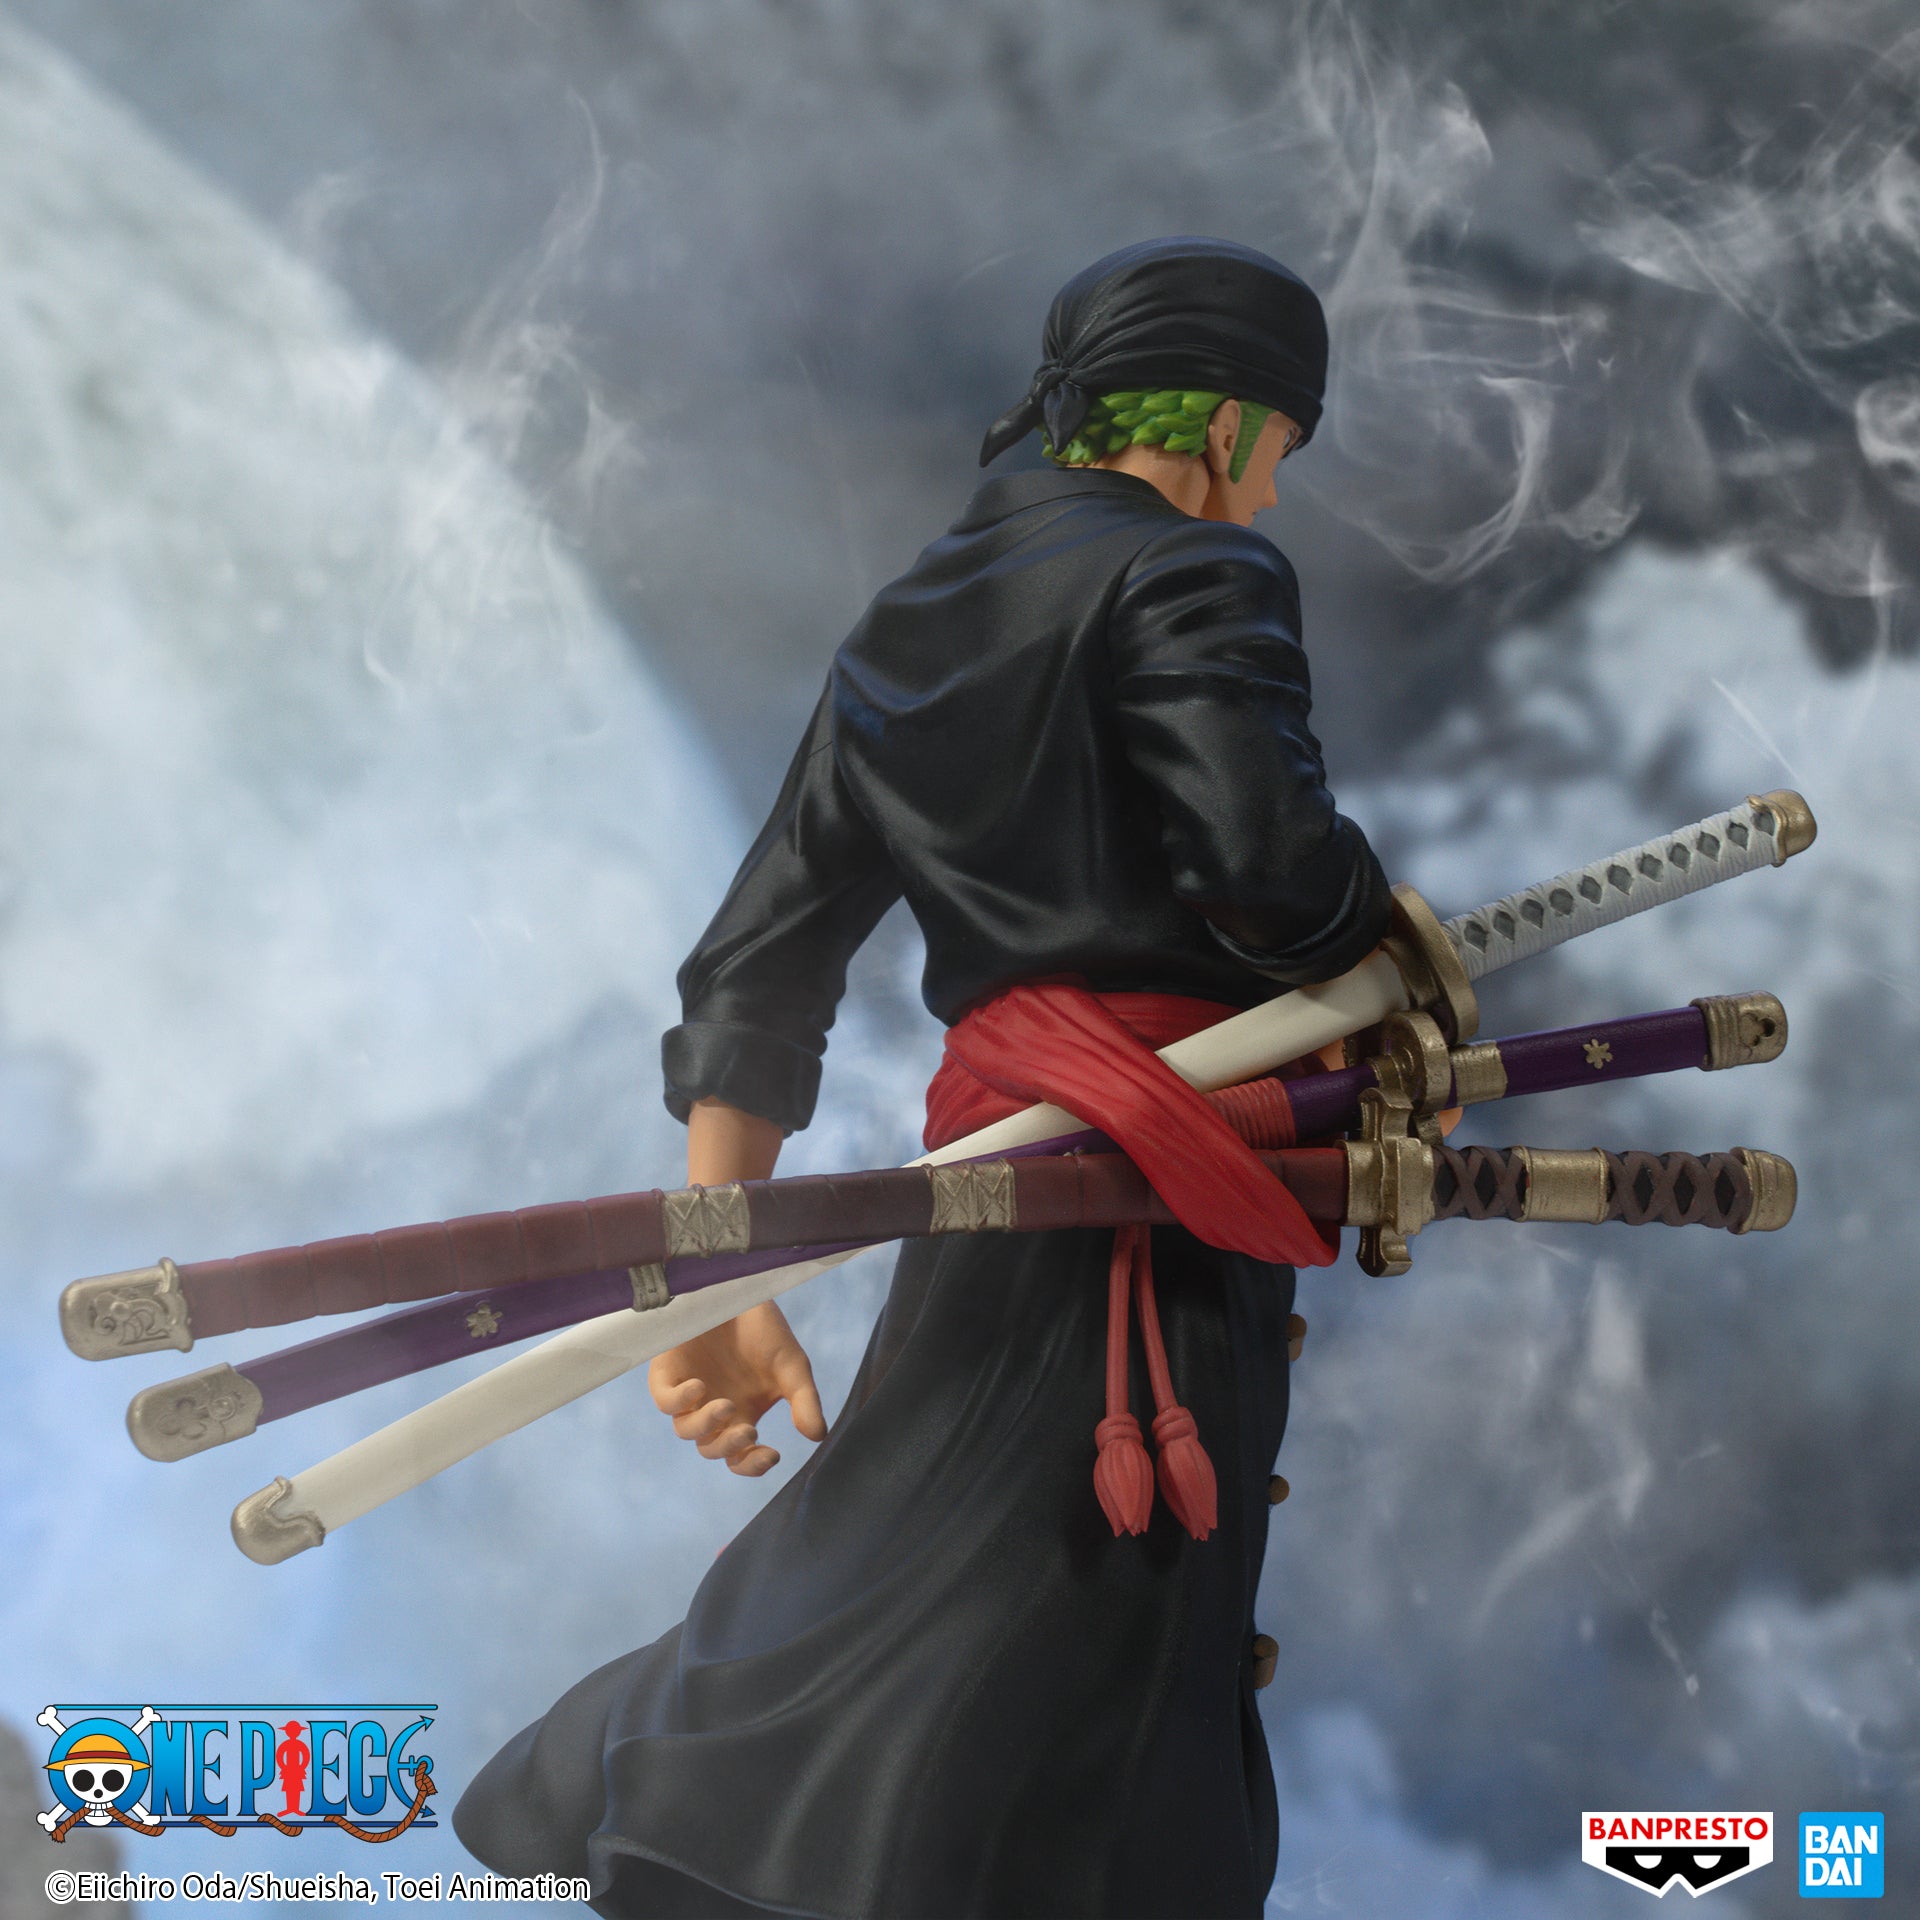 Banpresto The Shukko: One Piece - Roronoa Zoro